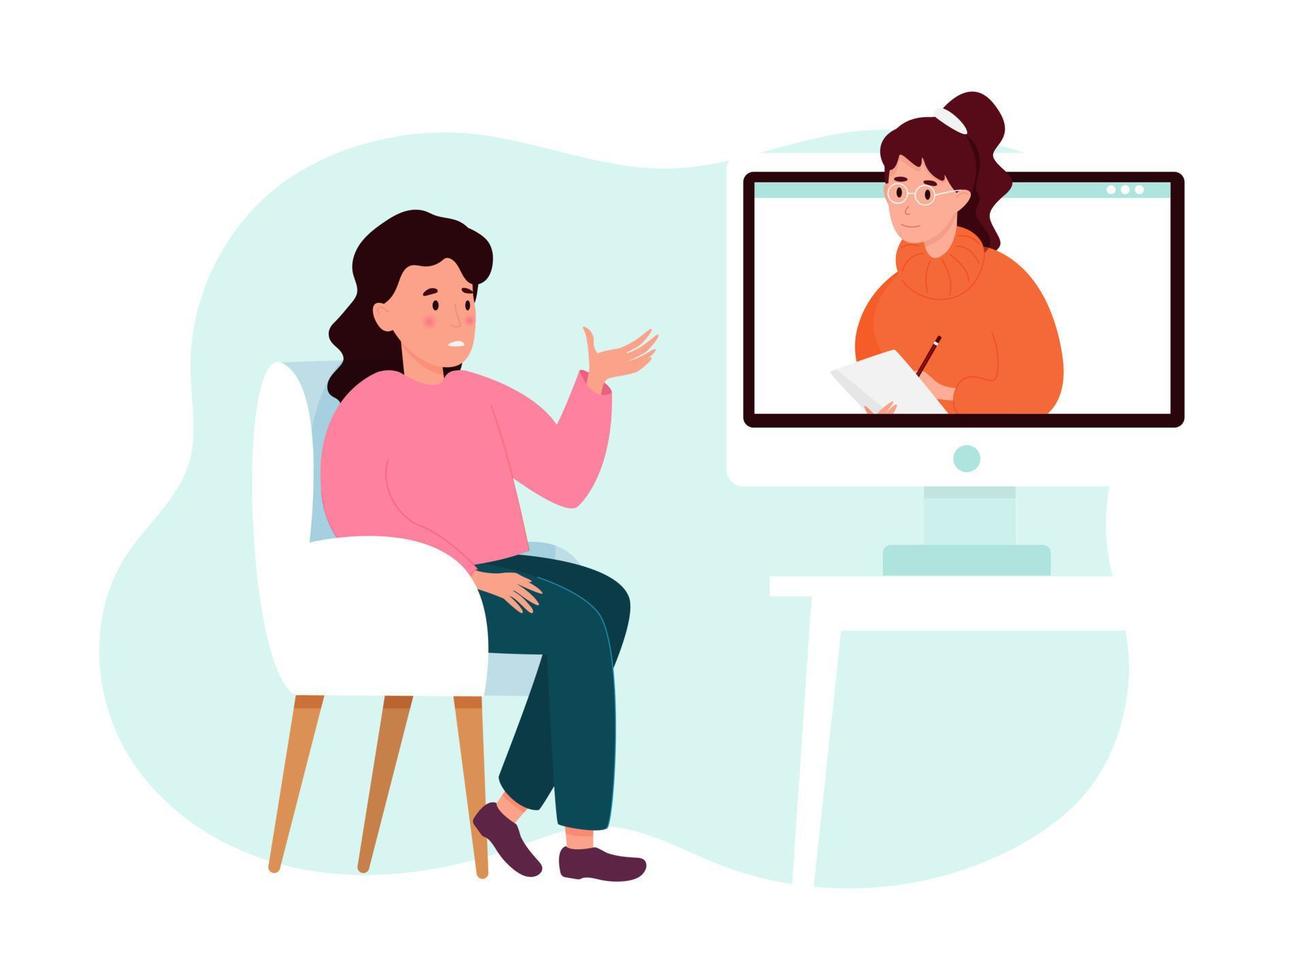 séance de psychothérapie en ligne - une femme parle à un psychologue à l'écran des problèmes. concept de santé mentale. illustration vectorielle vecteur